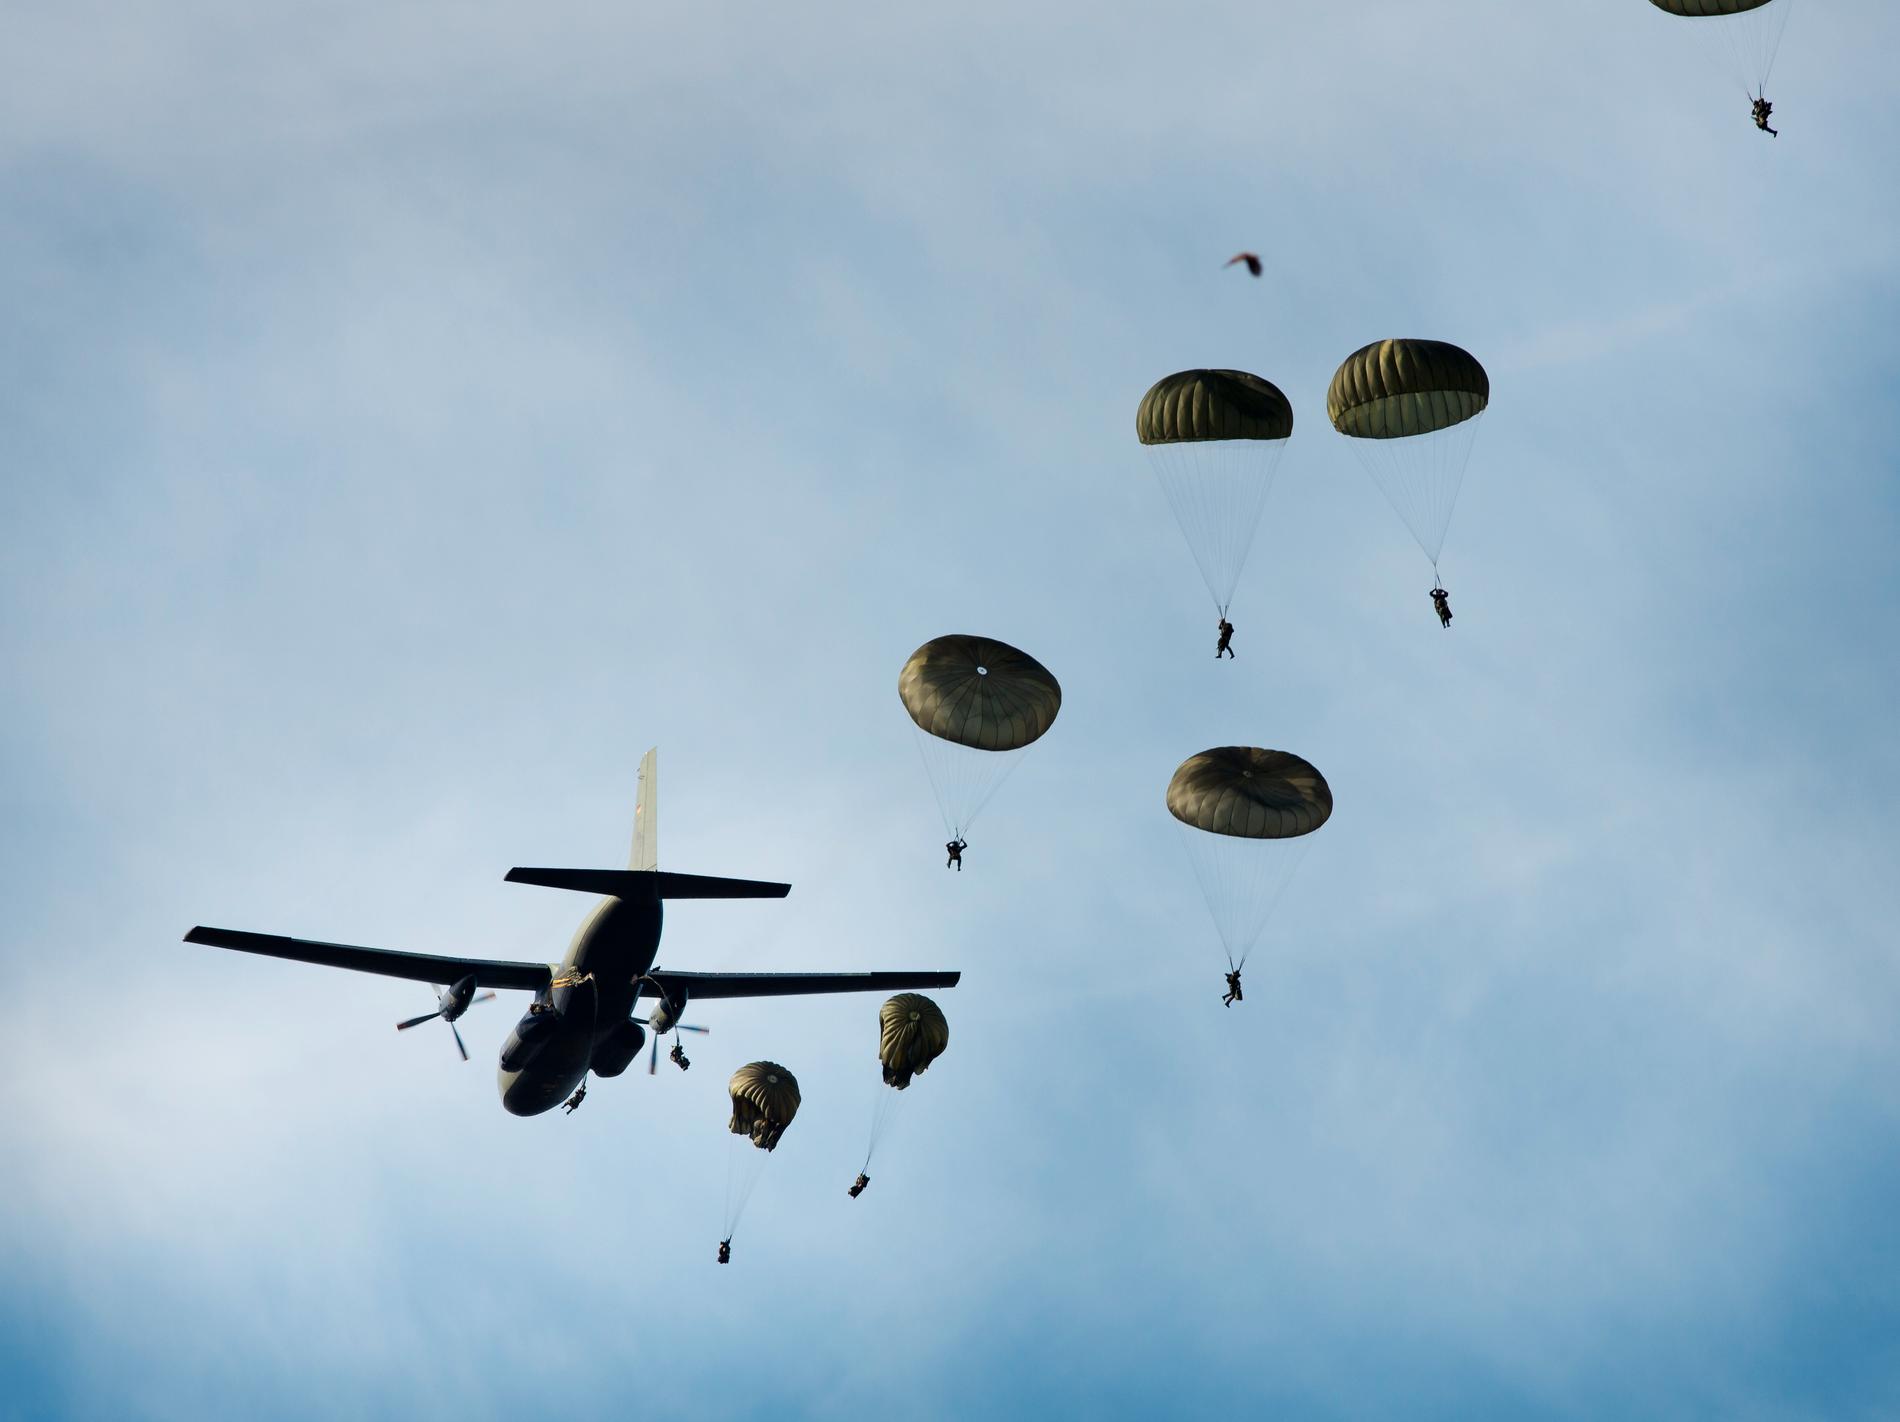 Tyska luftburna 26:e brigaden landsätter fallskärmstrupper på Gotland, under övningen Northern Coasts 2013. Blir det polacker som hoppar nästa gång?